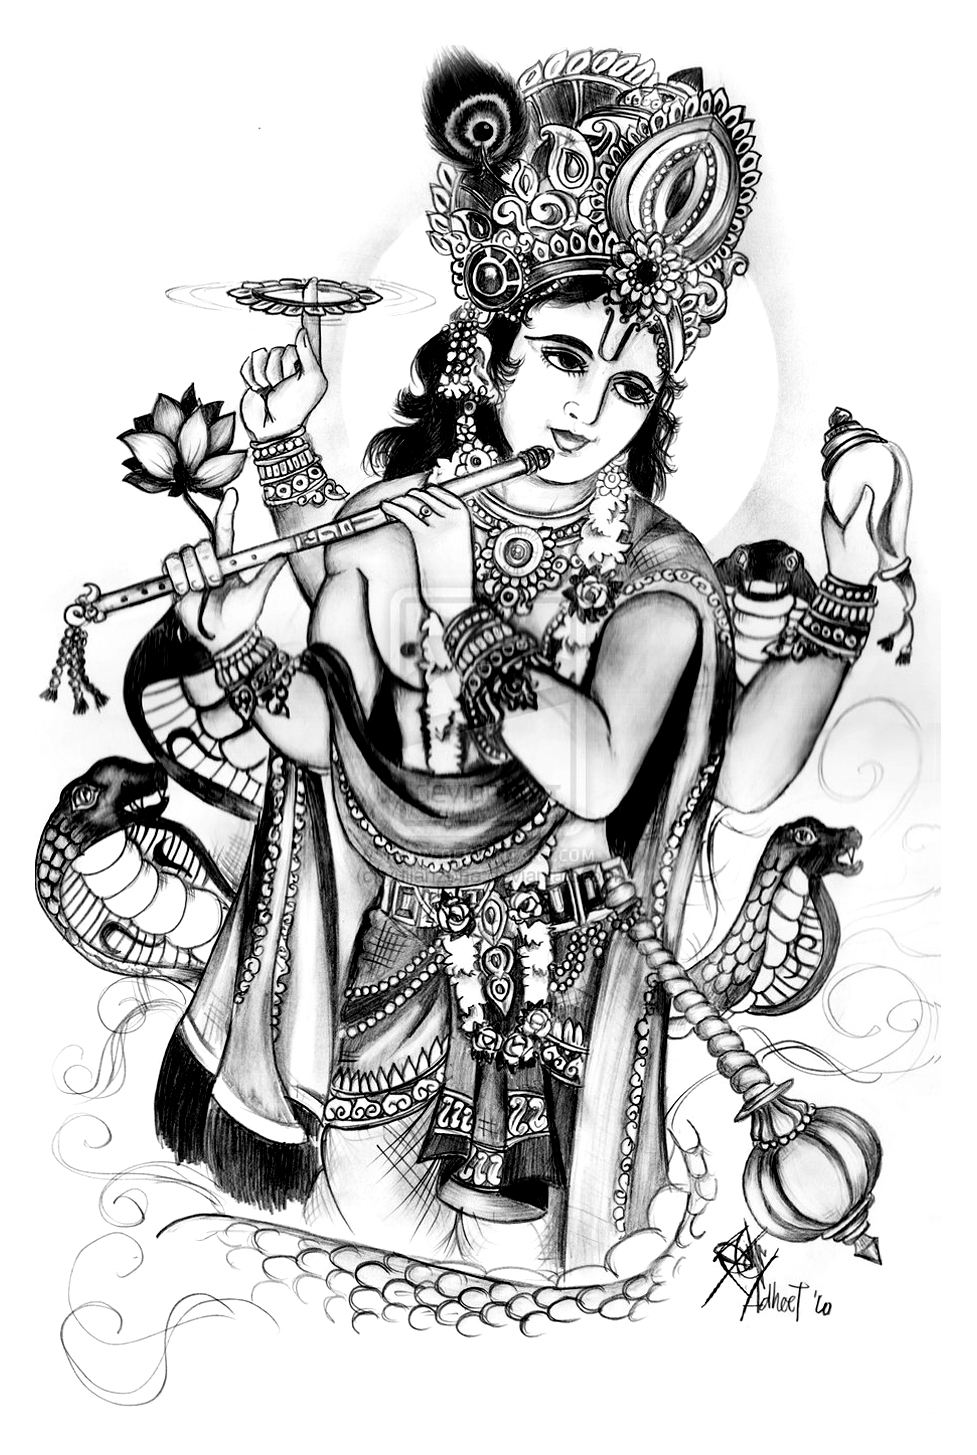 Vishnu : uma das principais divindades do hinduísmo, e o Ser Supremo na sua tradição Vaishnavista. Vishnu é também chamado o 'preservador' na trindade hindu (Trimurti) que inclui Brahma e Shiva